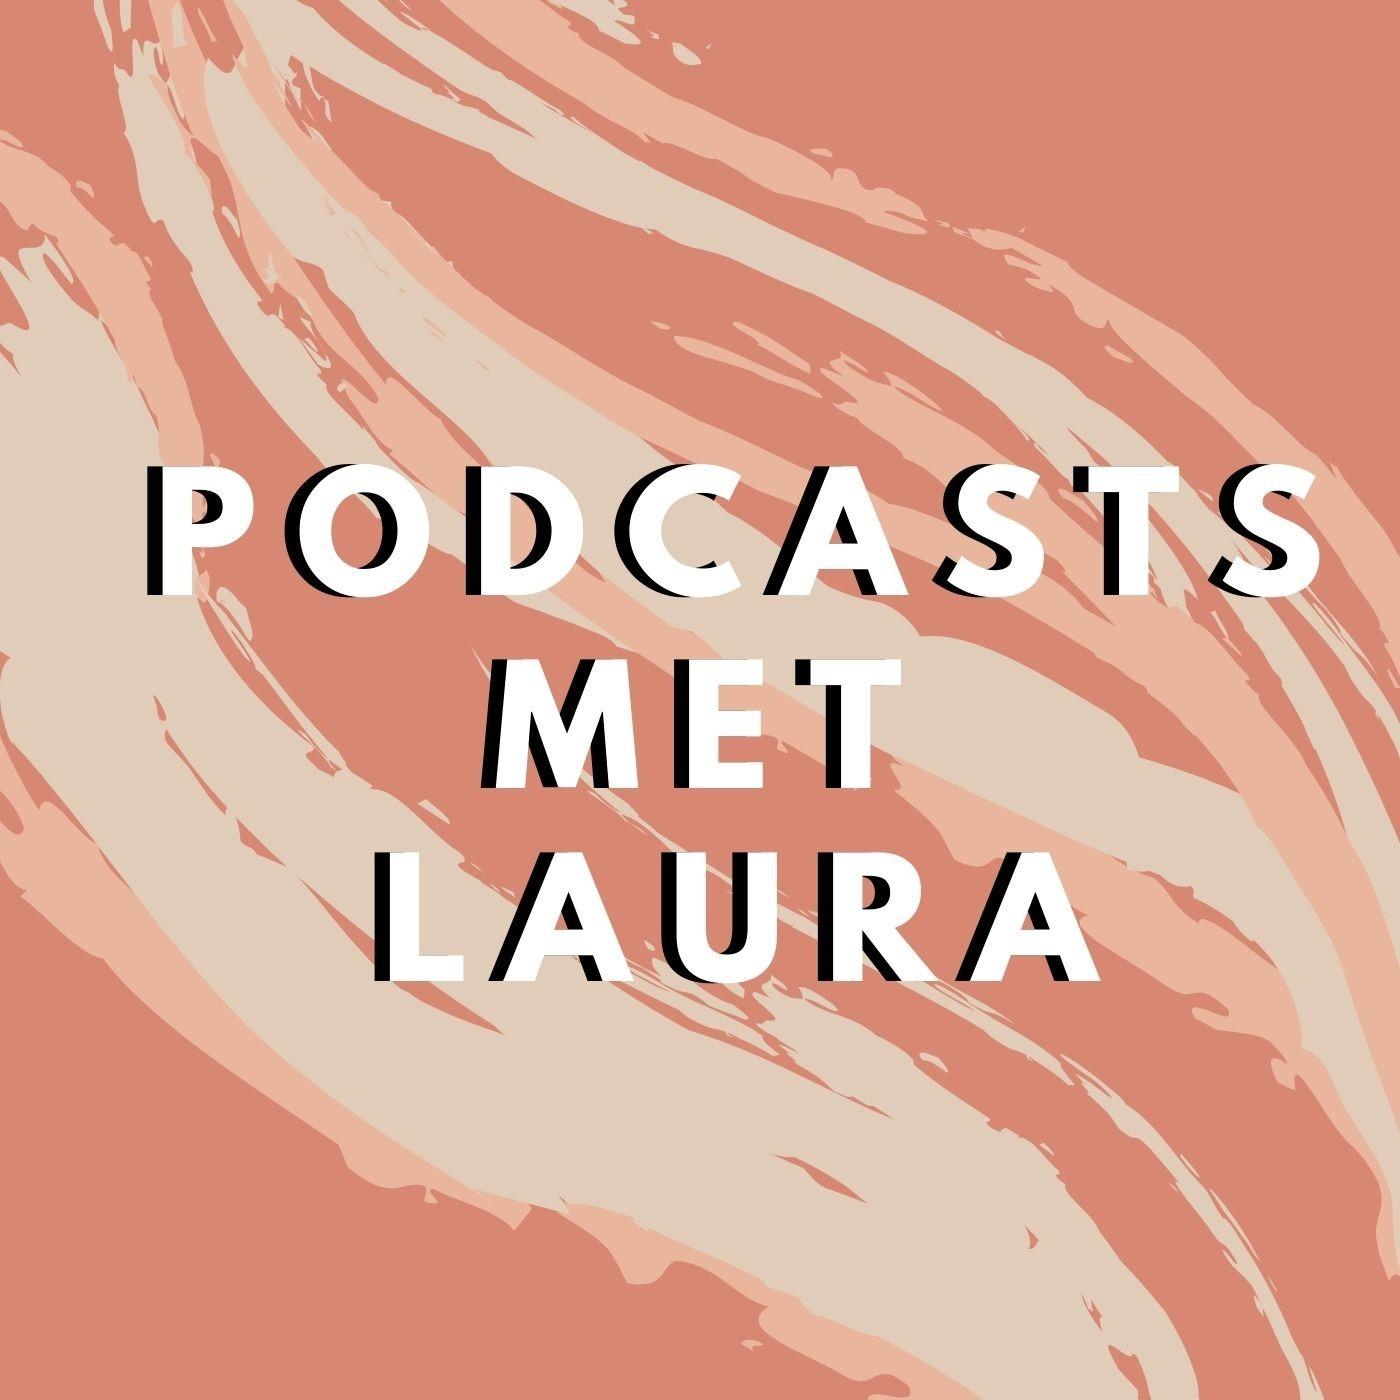 Podcasts met Laura